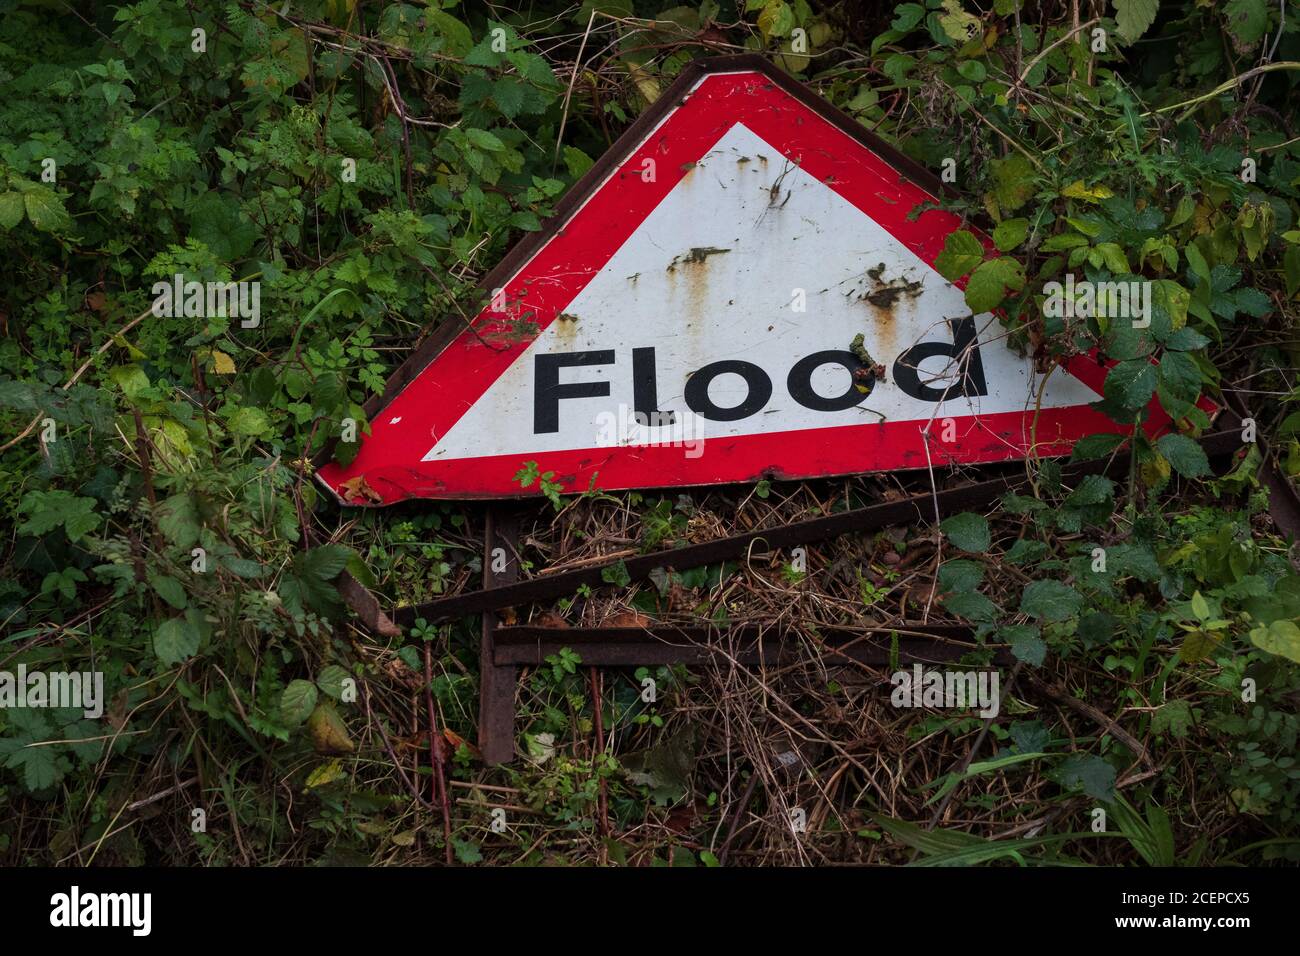 Le panneau d'avertissement de sécurité contre les inondations est rouillé et s'est effondré après de fortes inondations sur le bord de la route. Angleterre, Royaume-Uni. Banque D'Images